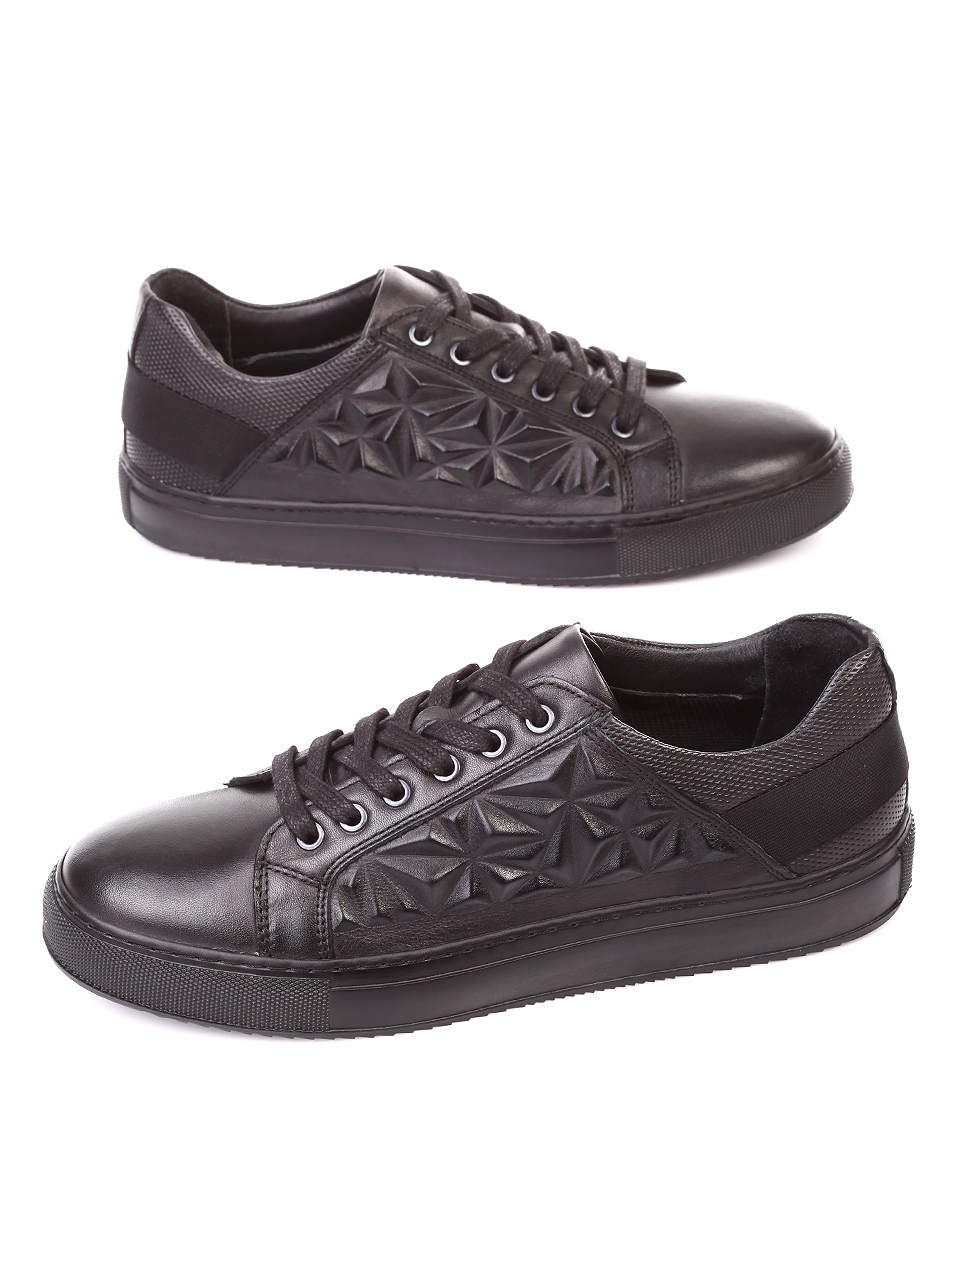 Ежедневни мъжки обувки от естествена кожа 7AT-181112 black